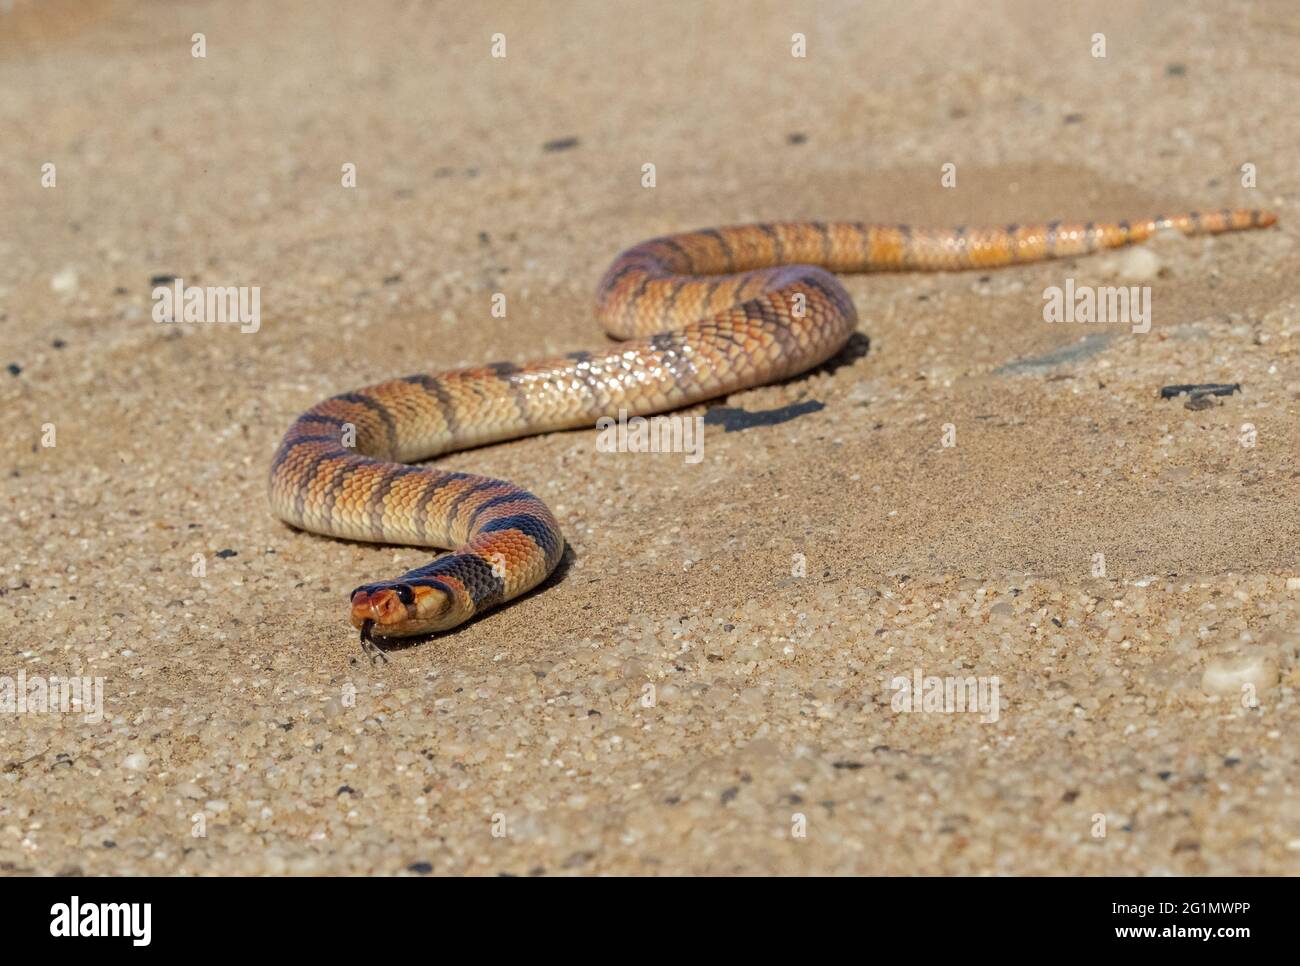 Namibia, Swakopmund, Parco Nazionale Dorob, serpente di Corallo (Apidelaps lubulus lubulus) Foto Stock